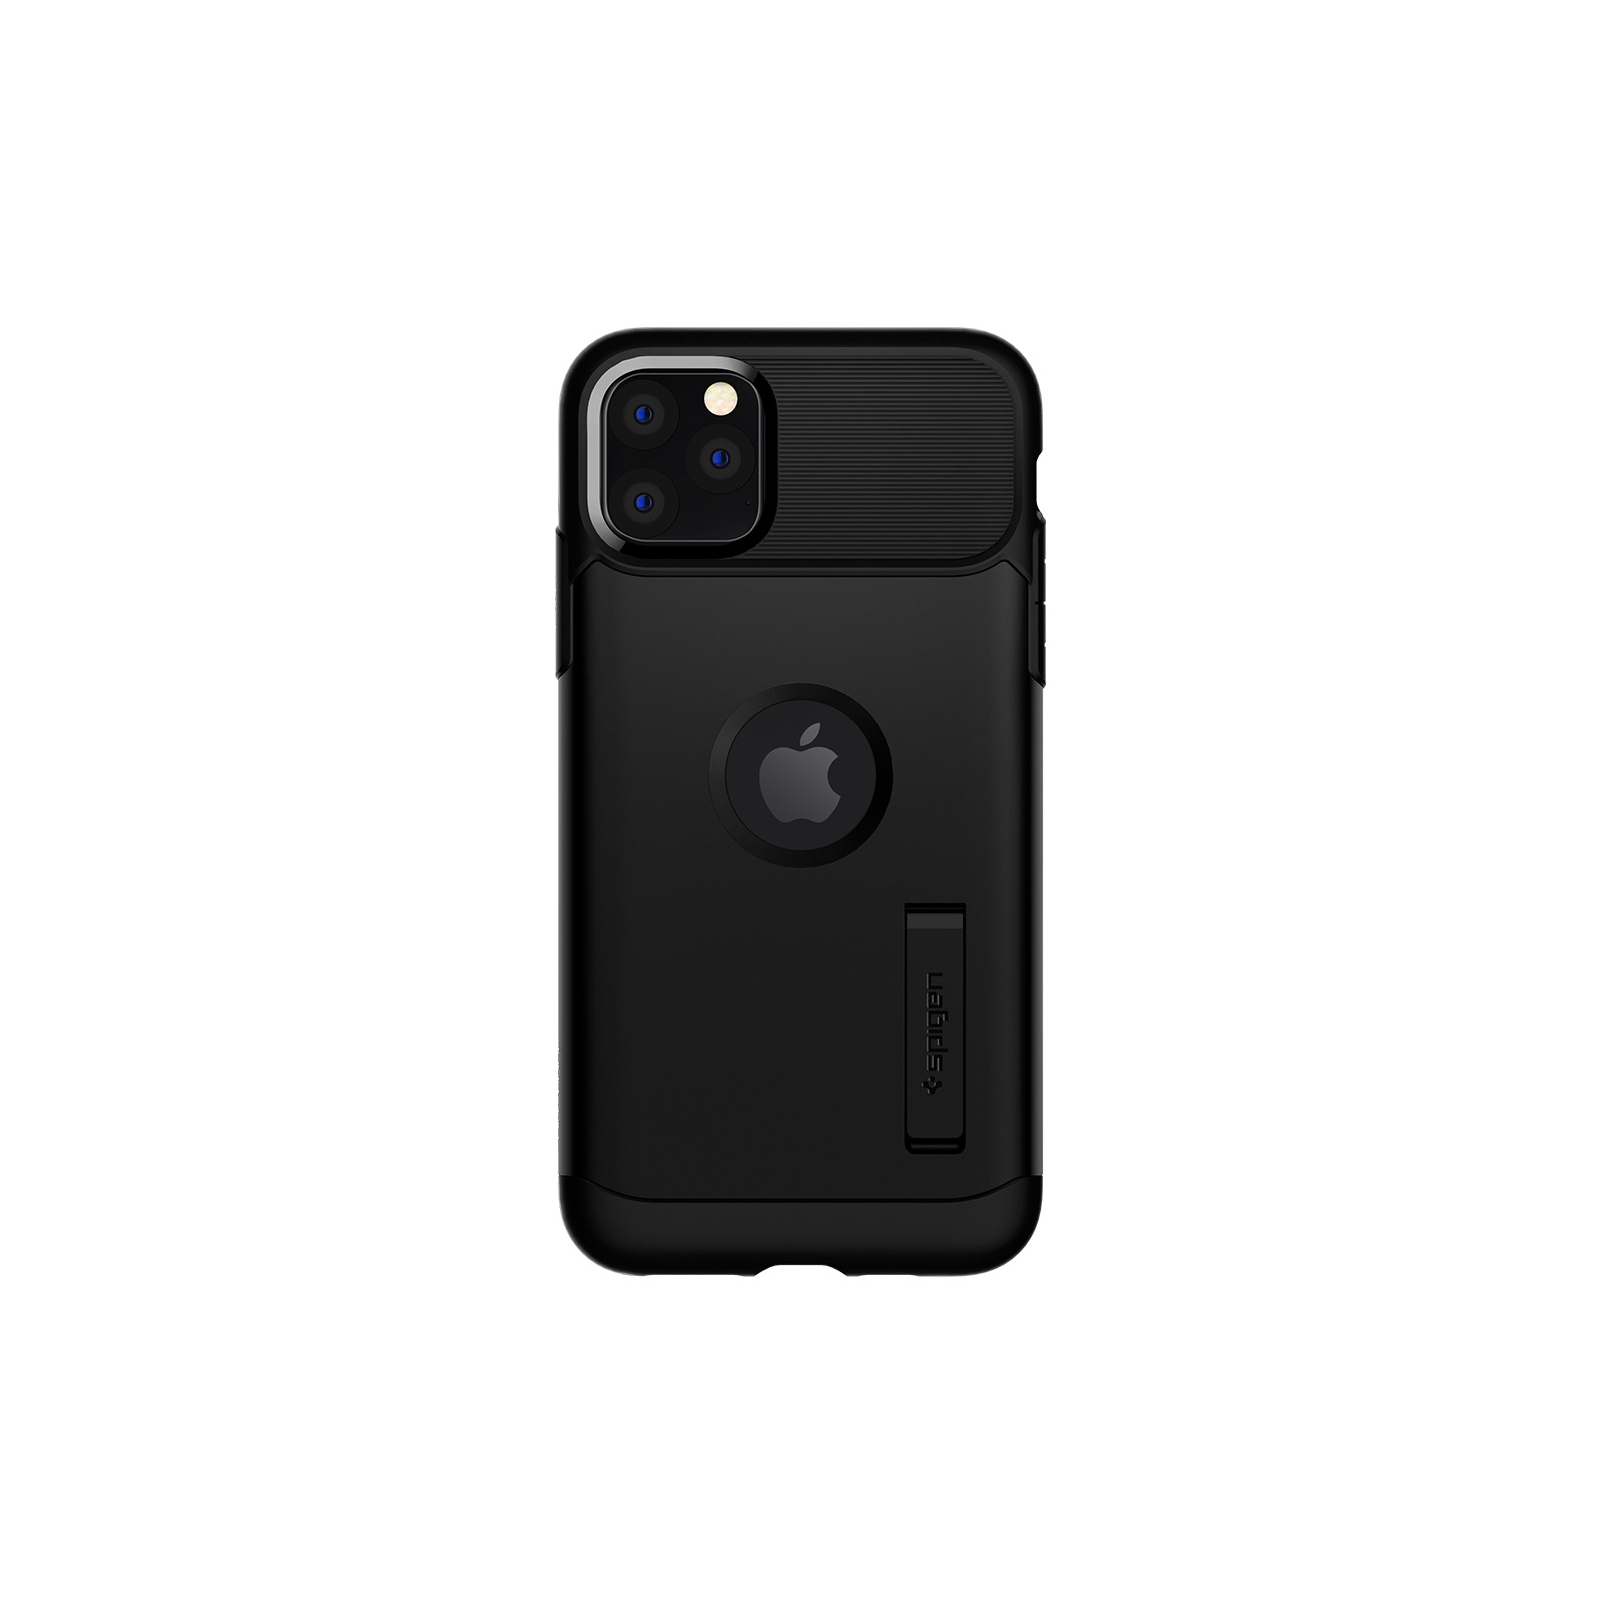 Чехол для мобильного телефона Spigen iPhone 11 Pro Max Slim Armor, Black (075CS27047)